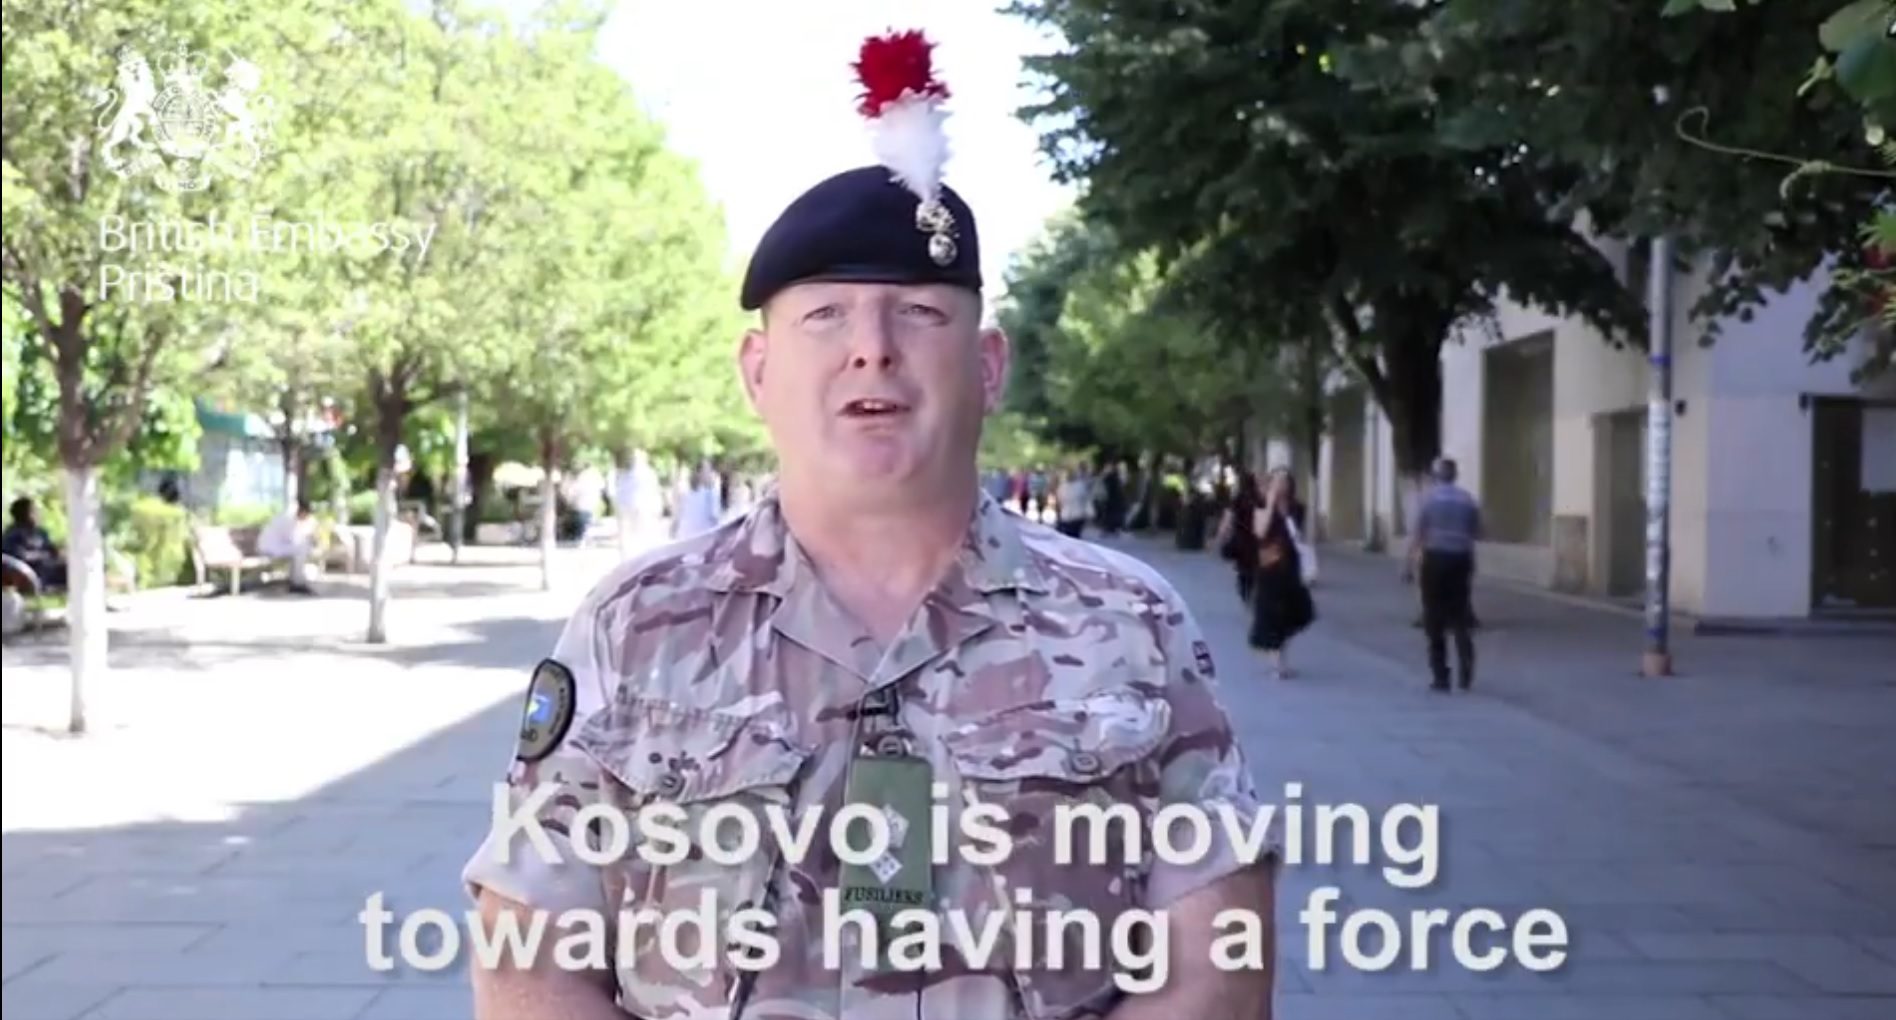 “Forca e Kosovës, në rrugë për anëtarësim eventual në NATO”